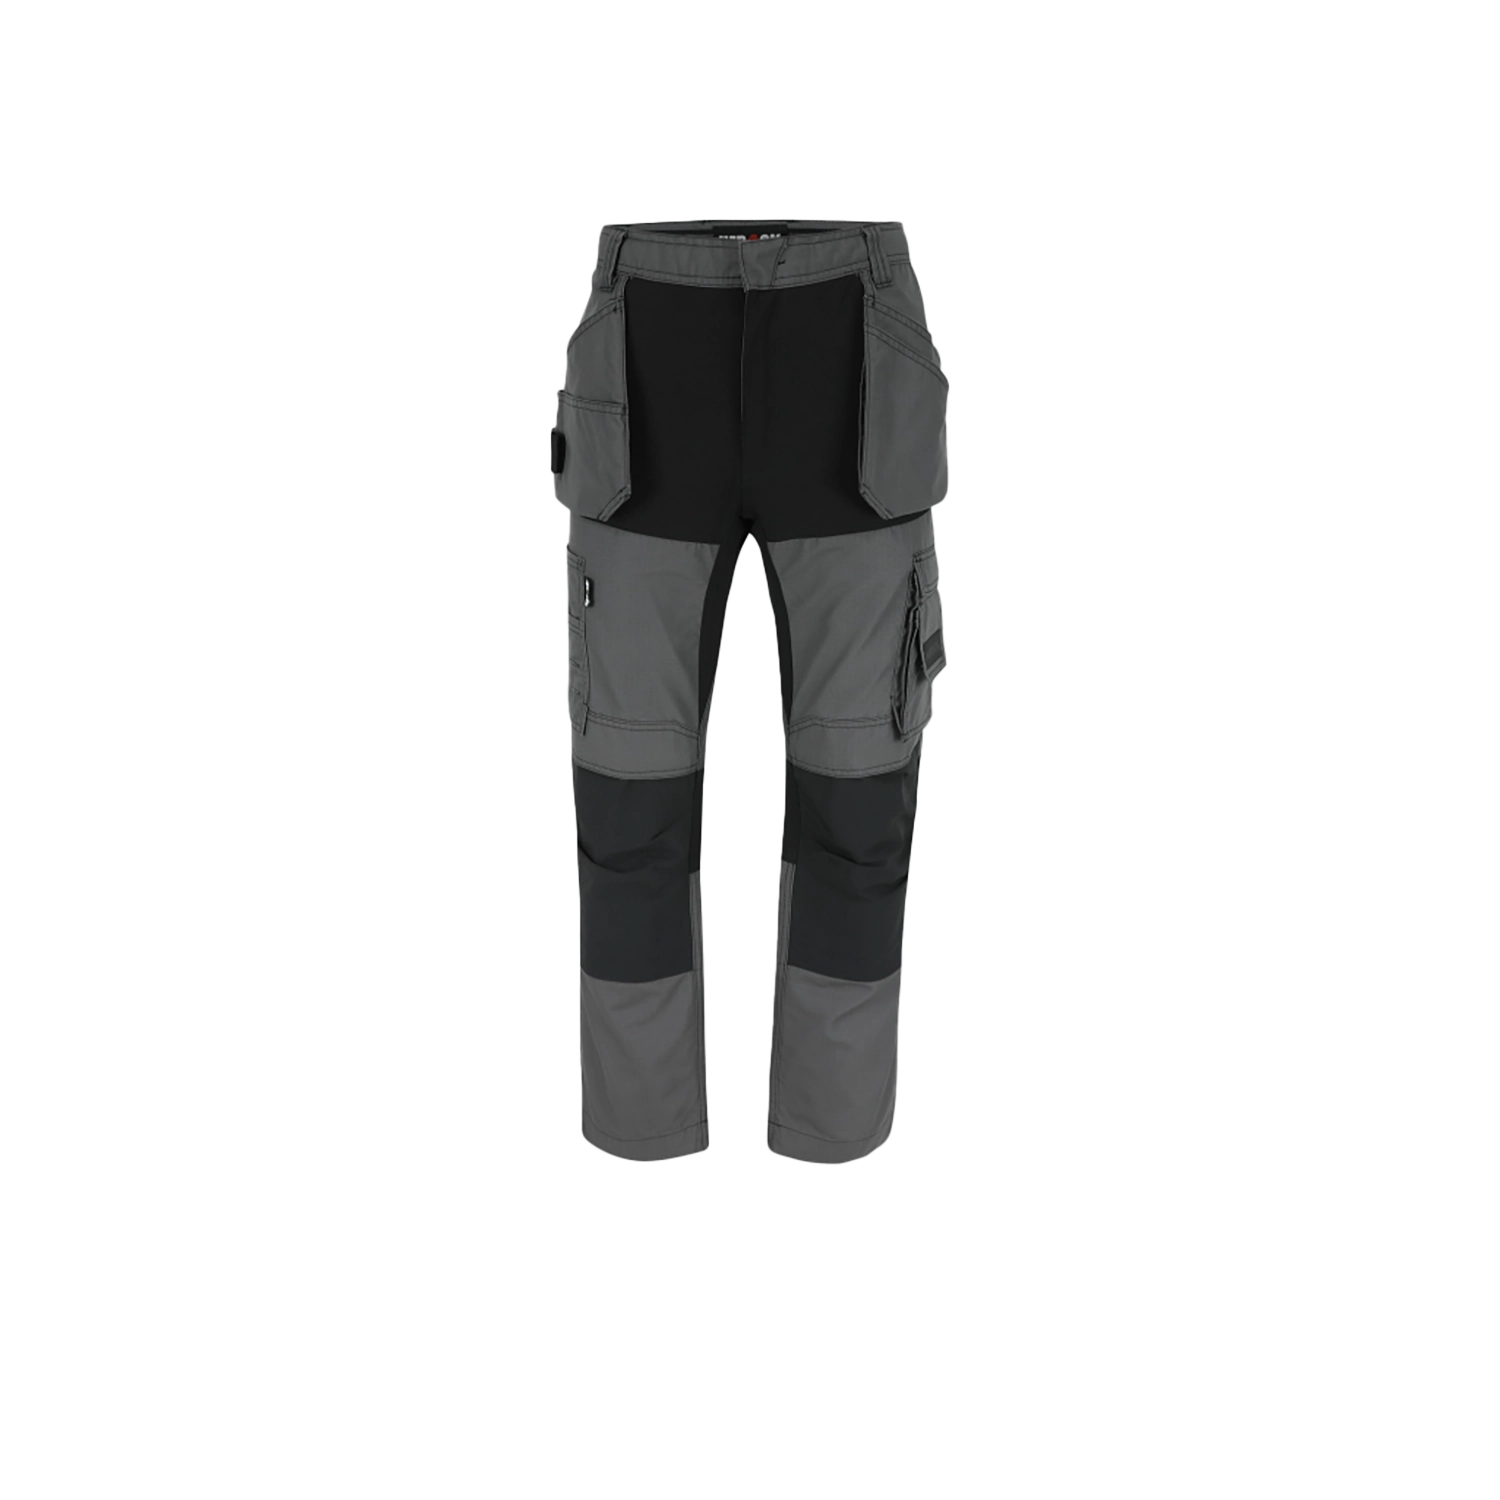 Pantalon de travail Spector - anthracite/noir - taille 46